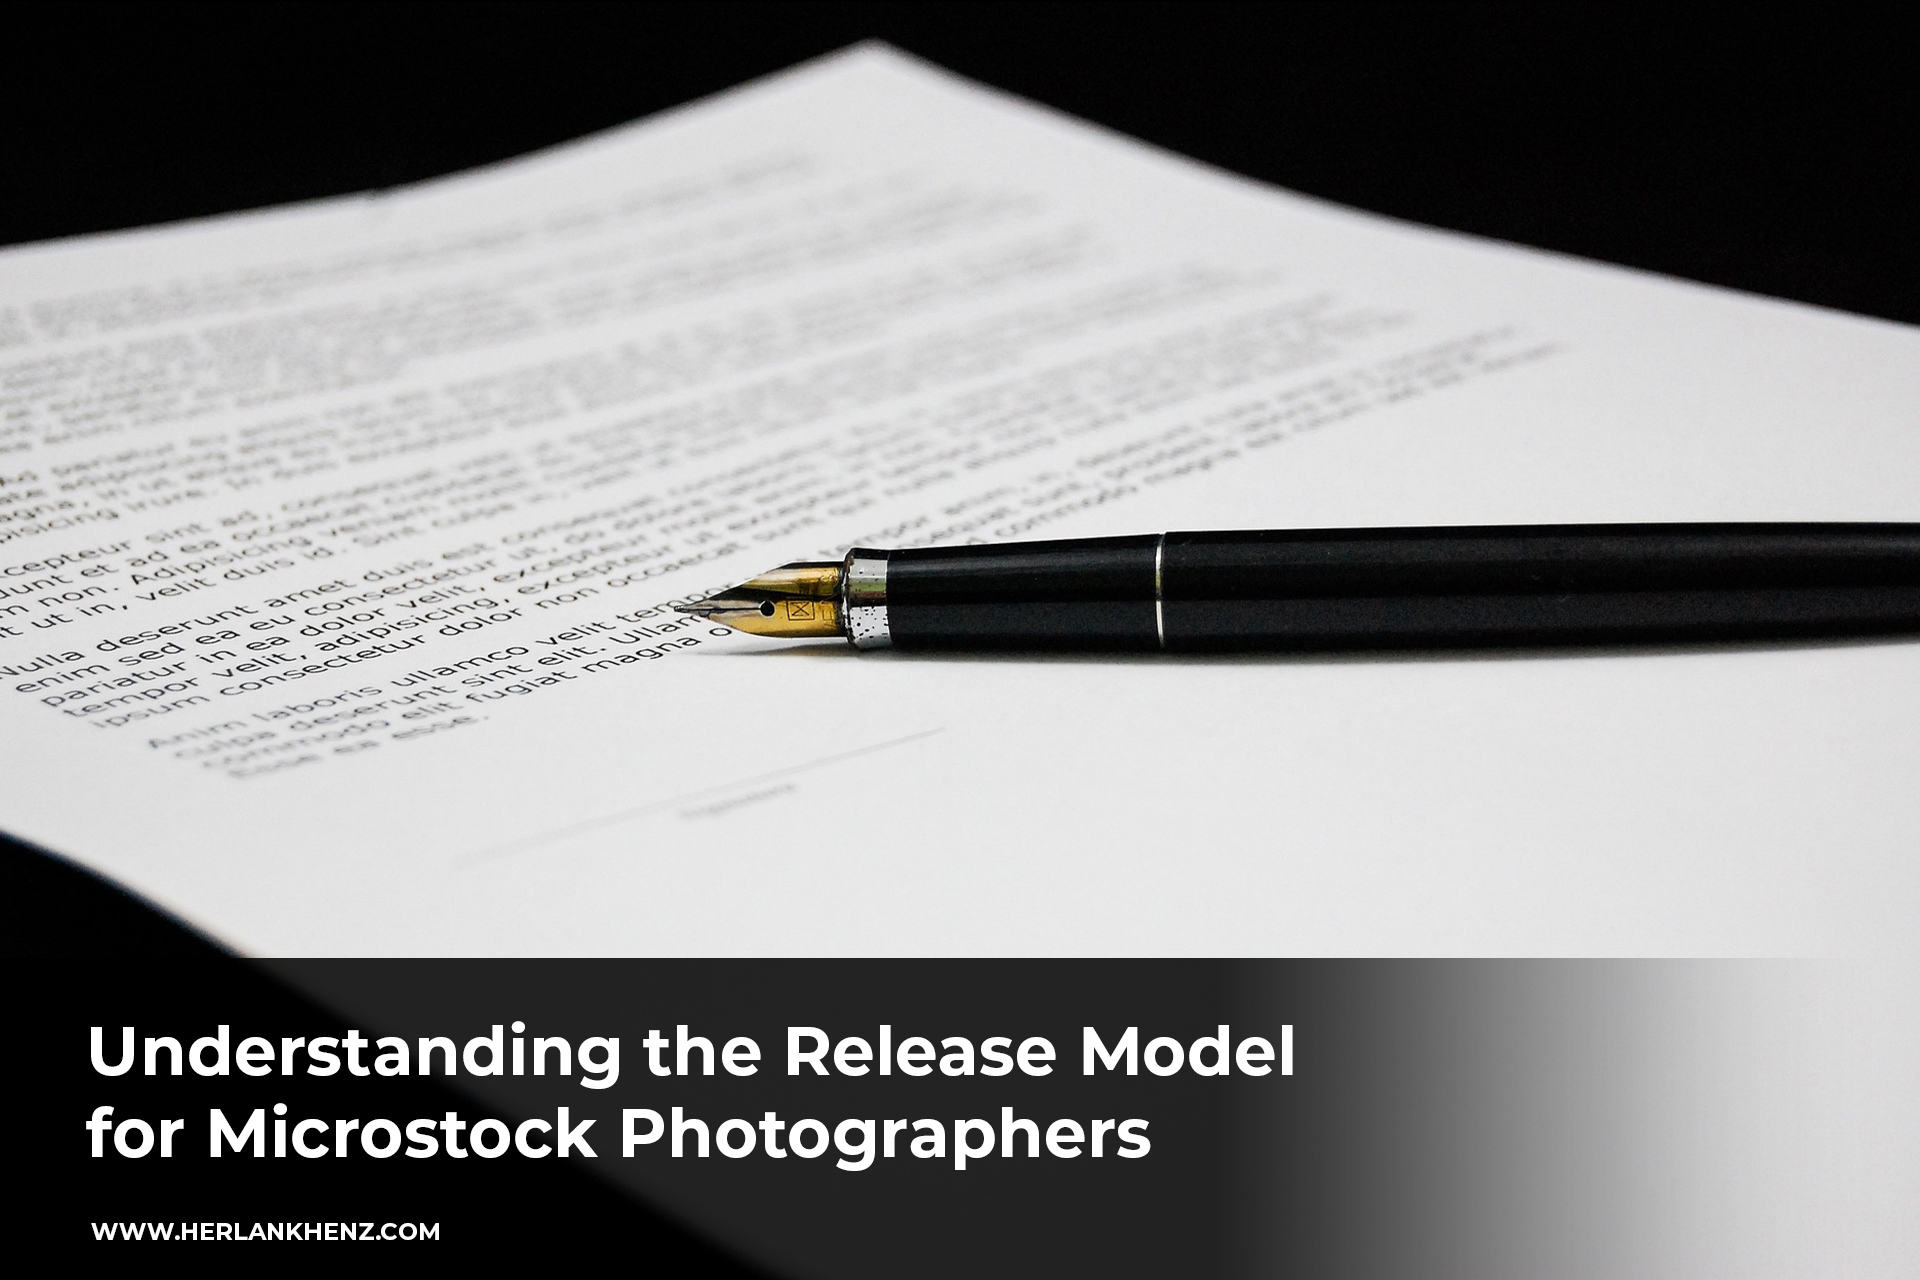 Compreendendo o modelo de lançamento para fotógrafos Microstock